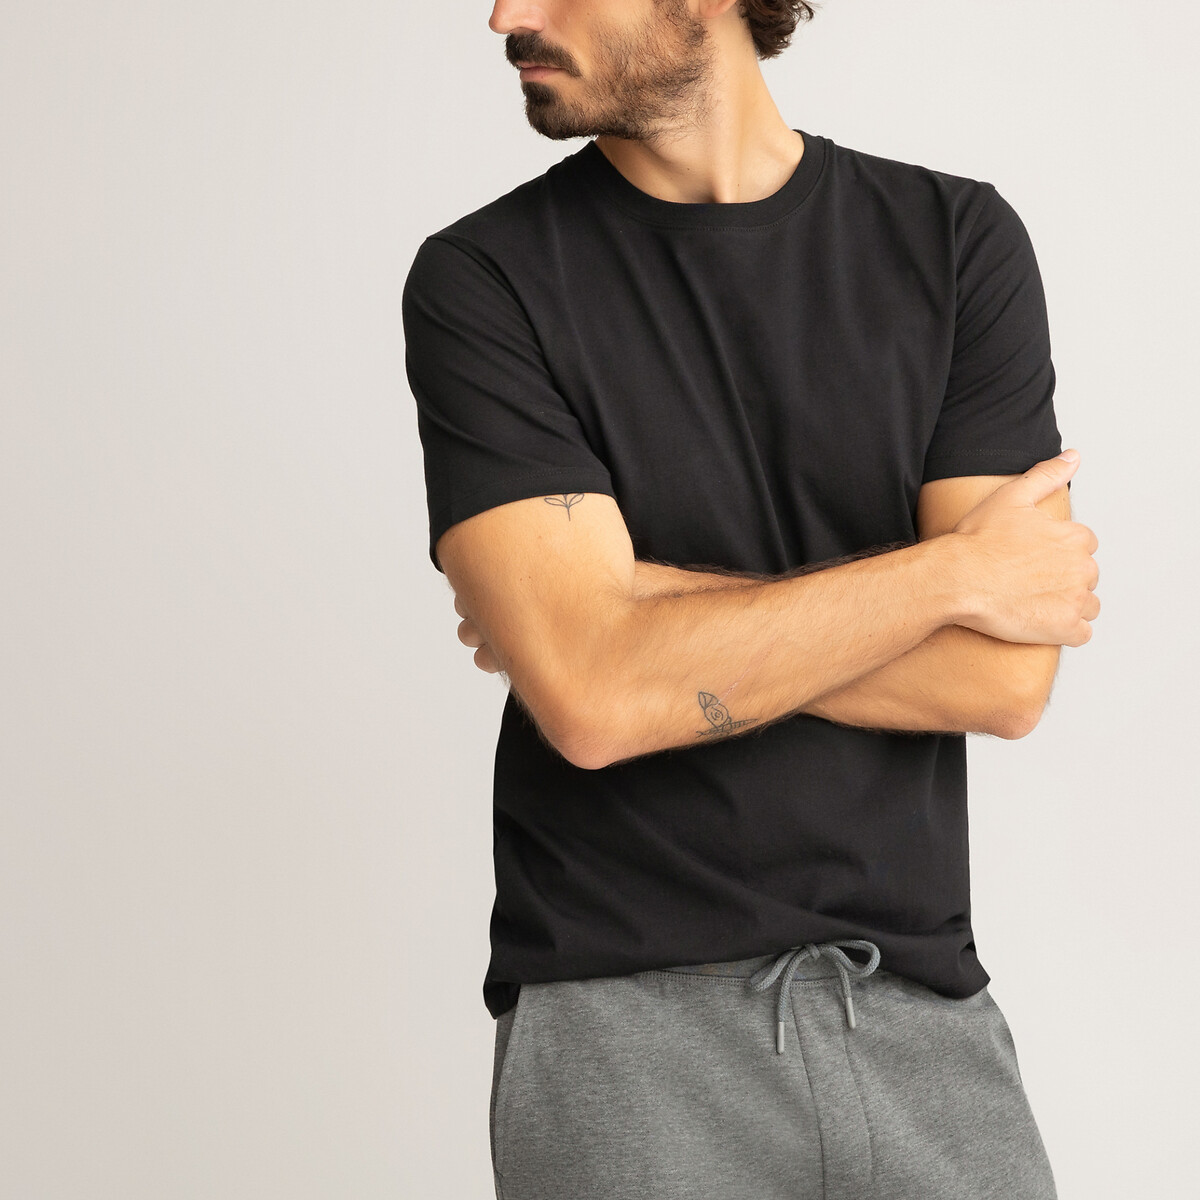 La Redoute Homme Vêtements Tops & T-shirts T-shirts Manches courtes Tee shirt en coton majoritaire uni 